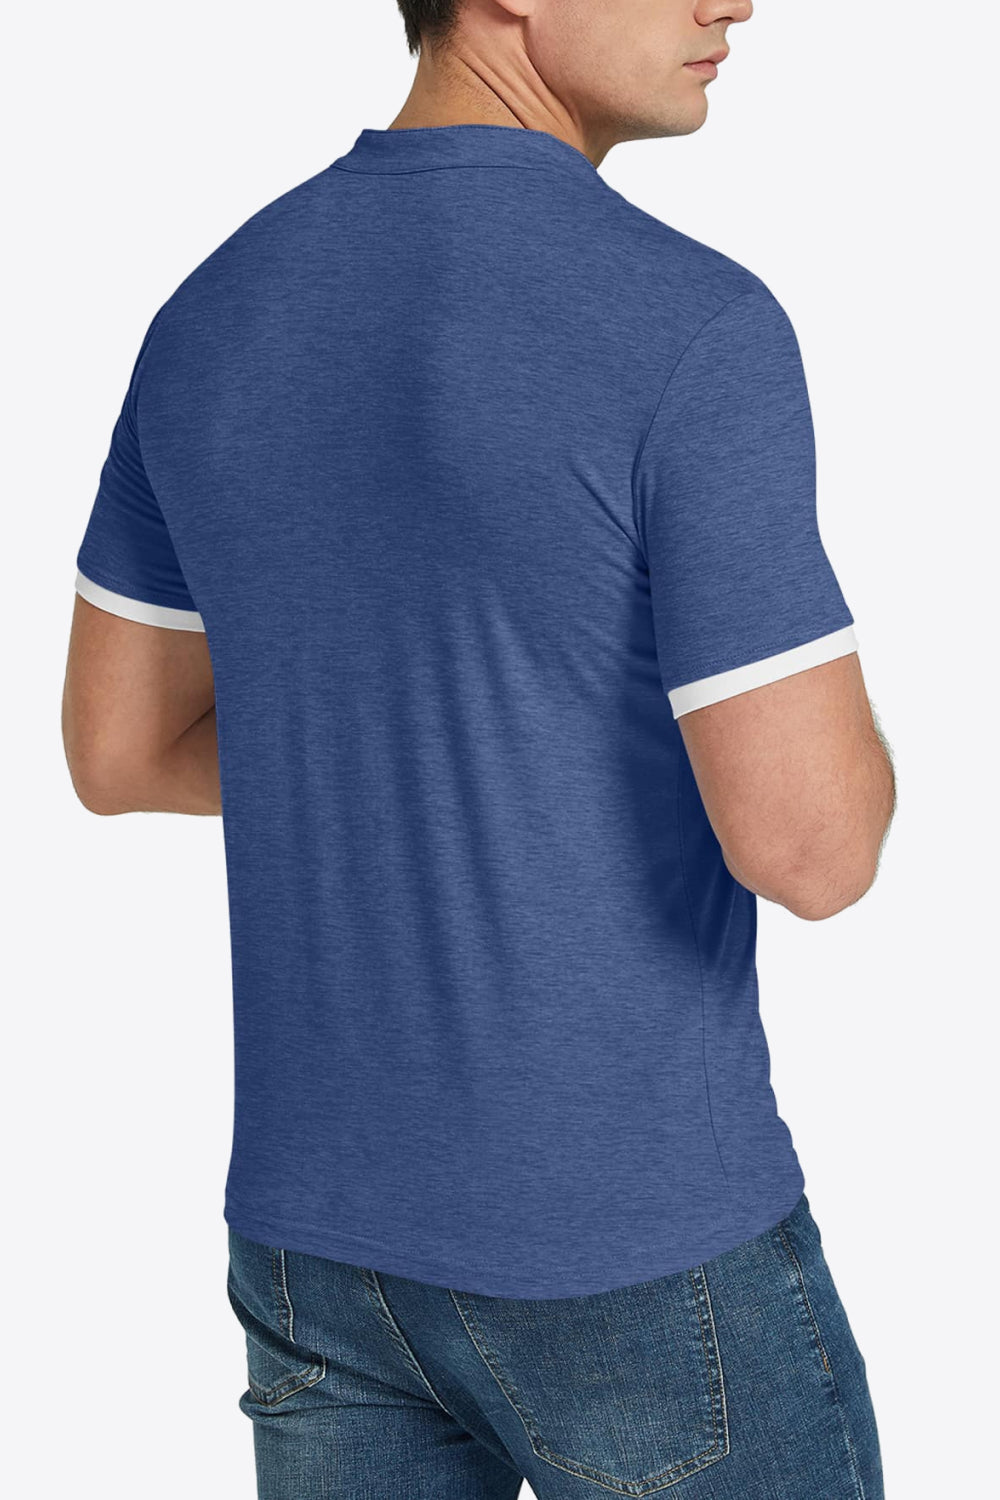 Contrast Short Sleeve T-Shirt